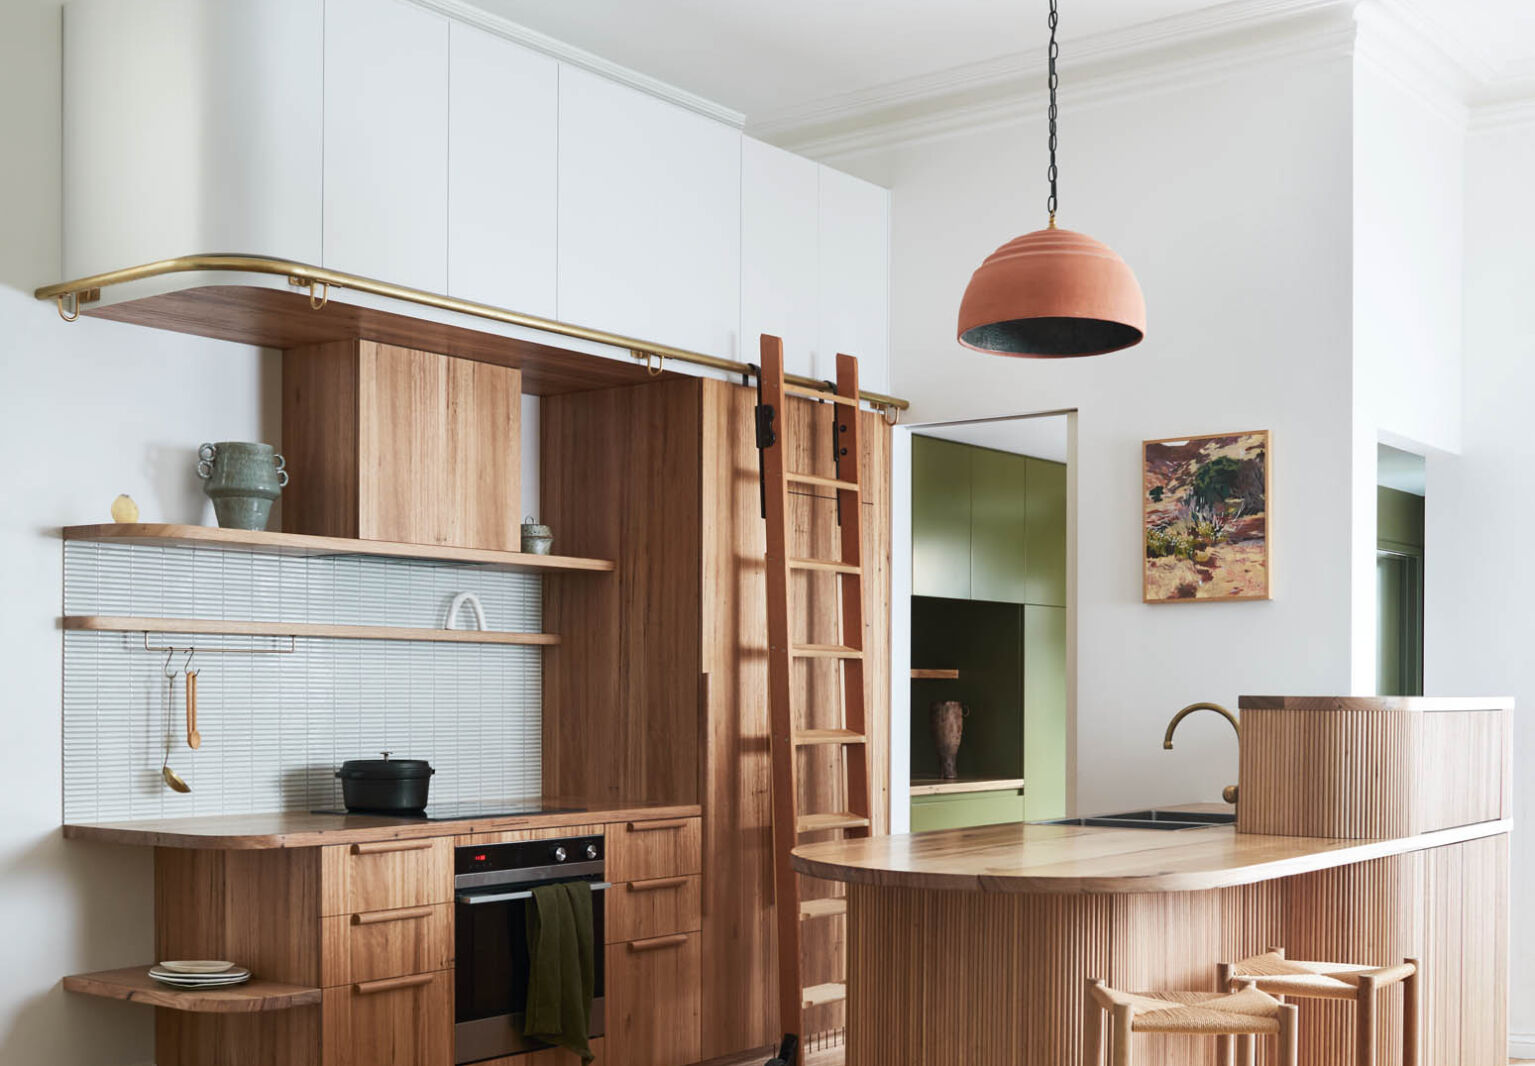 kim kneipp designed bent st kitchen victoria australia lisa cohen photo 2